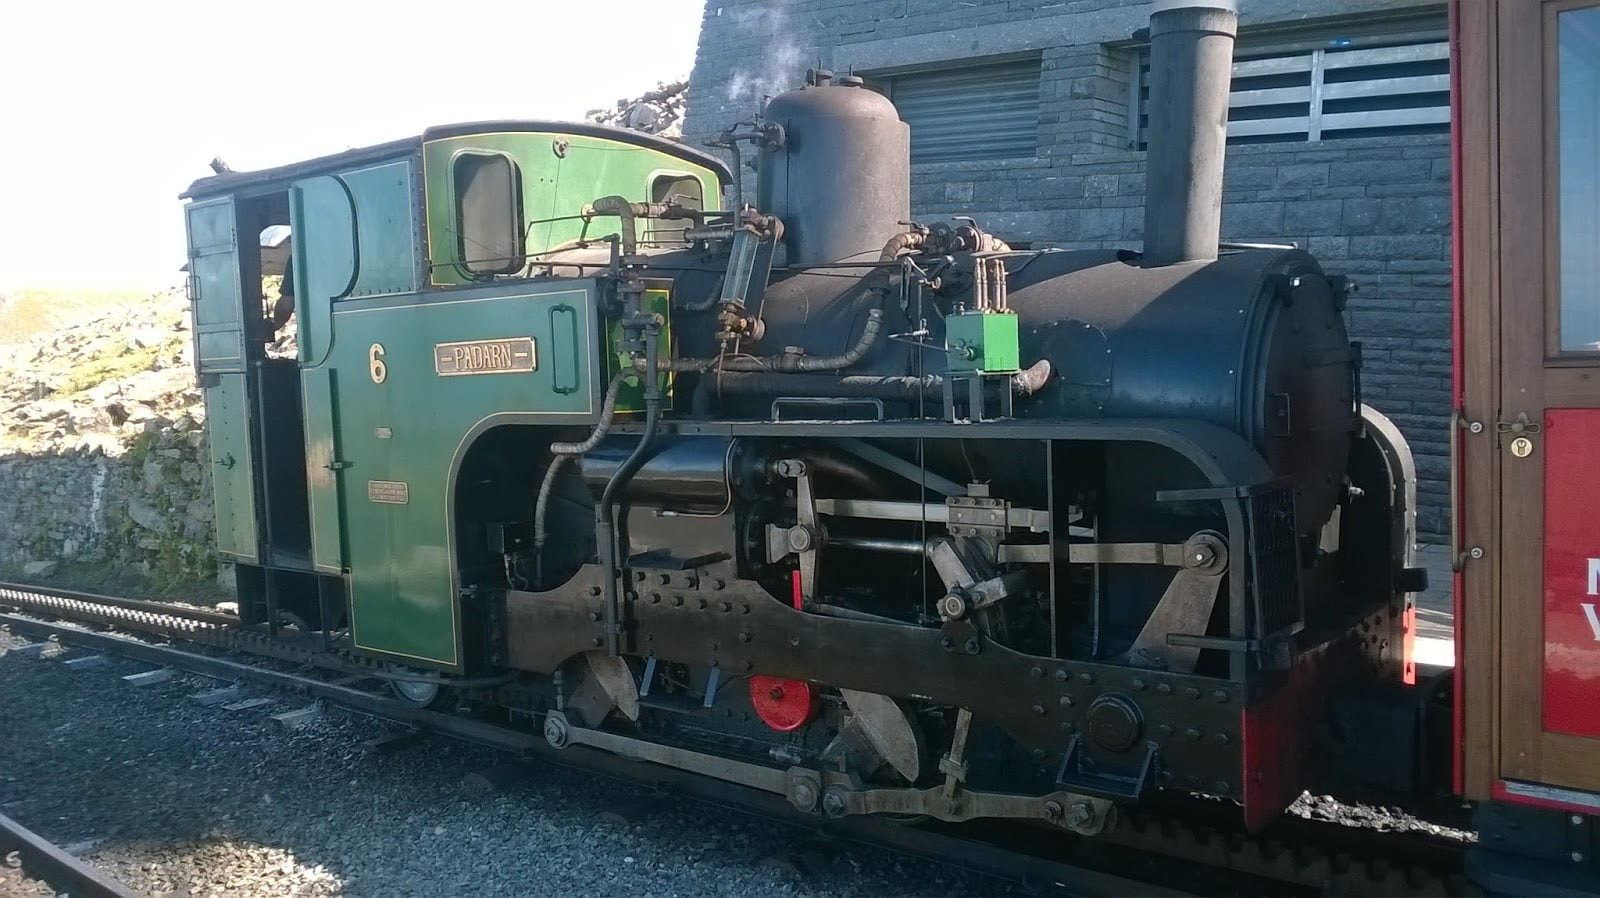 No. 6 Padarn at Snowdon Summit on the Snowdon Mountain Railway